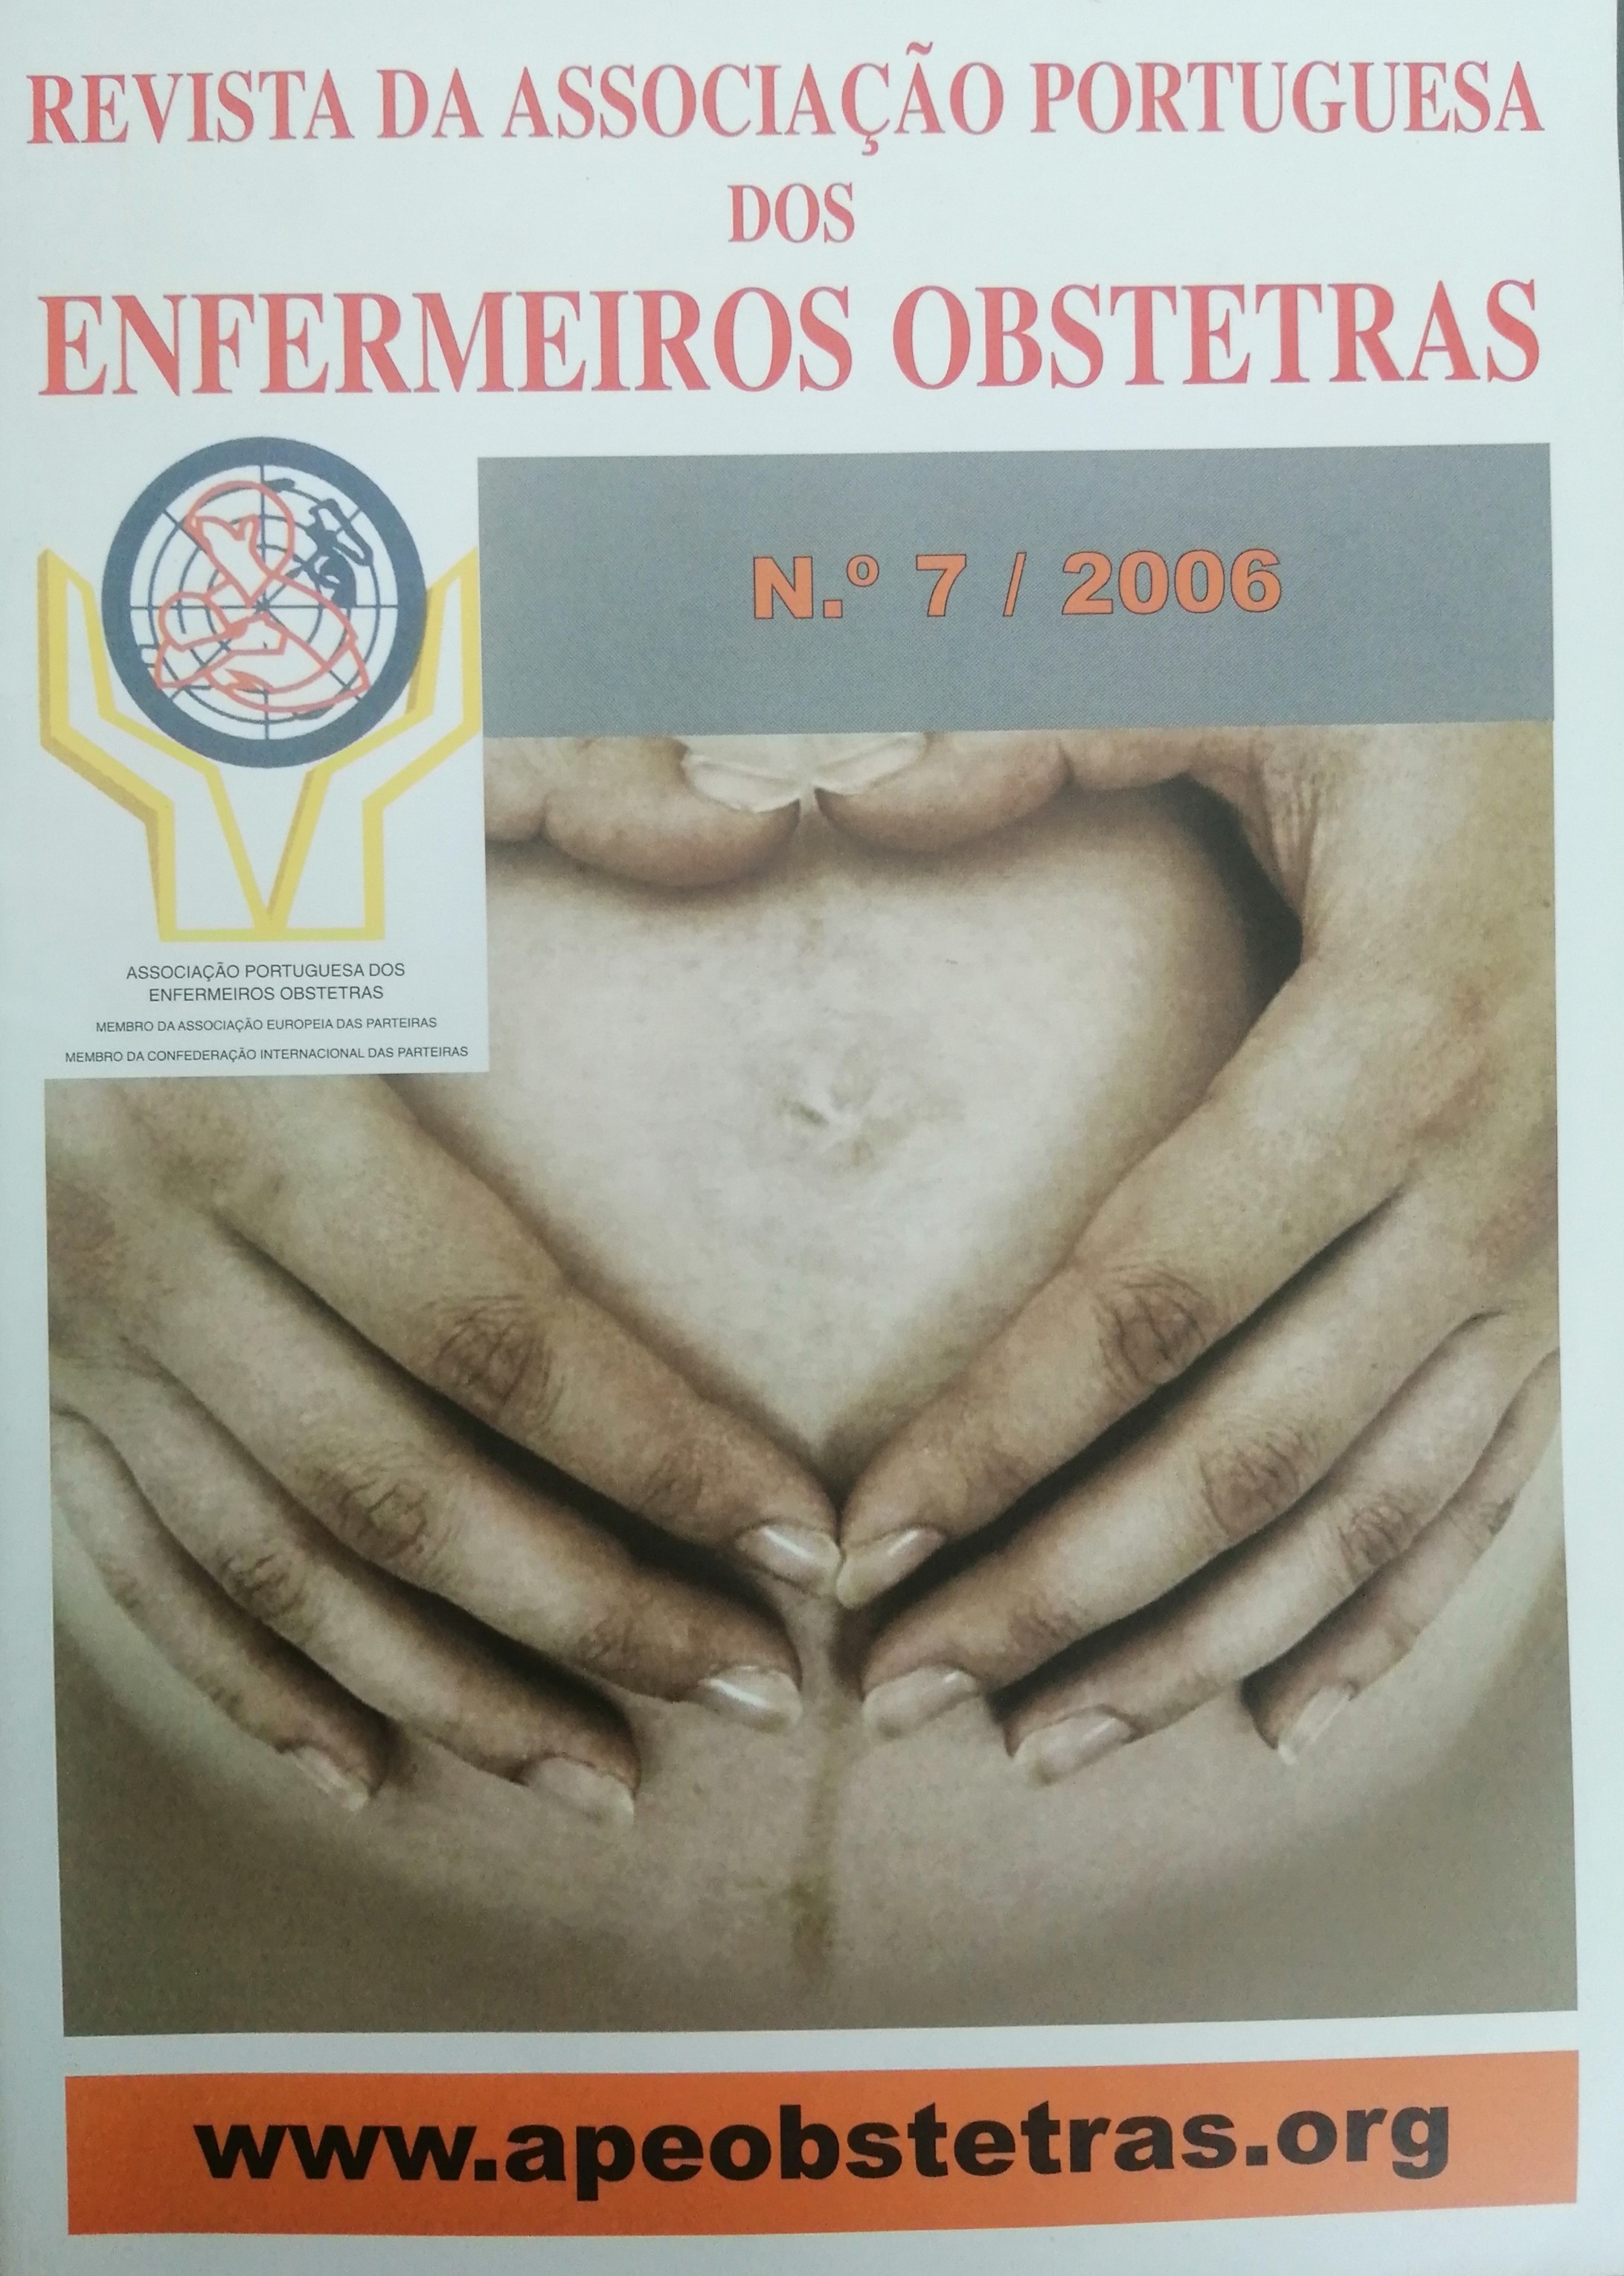 					Ver N.º 7 (2006): Revista da Associação Portuguesa de Enfermeiros Obstetras
				